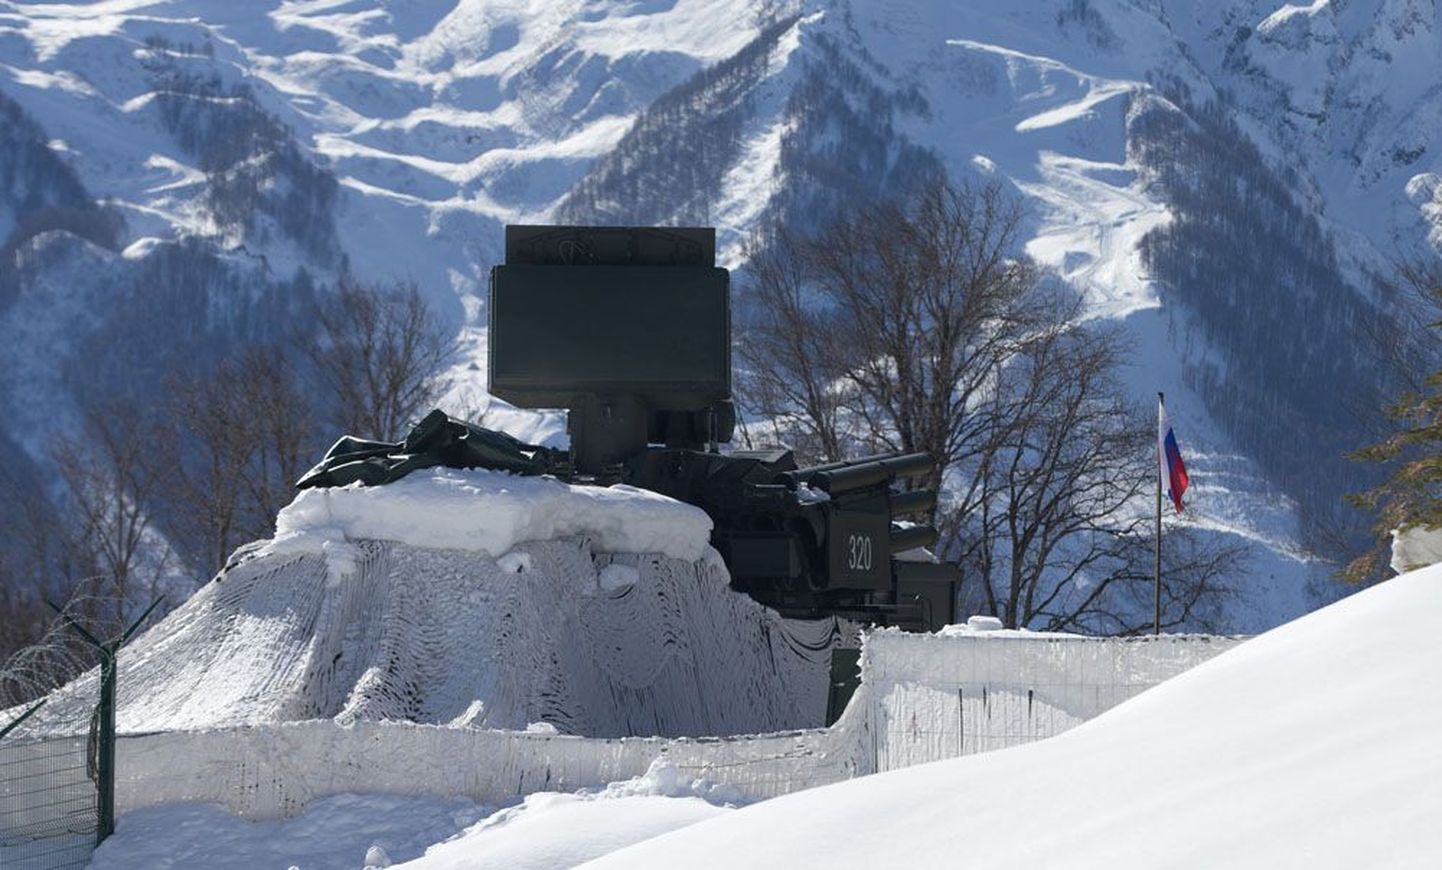 Lummavate mägede vahel valvab kombekalt kaetud armeetehnika.